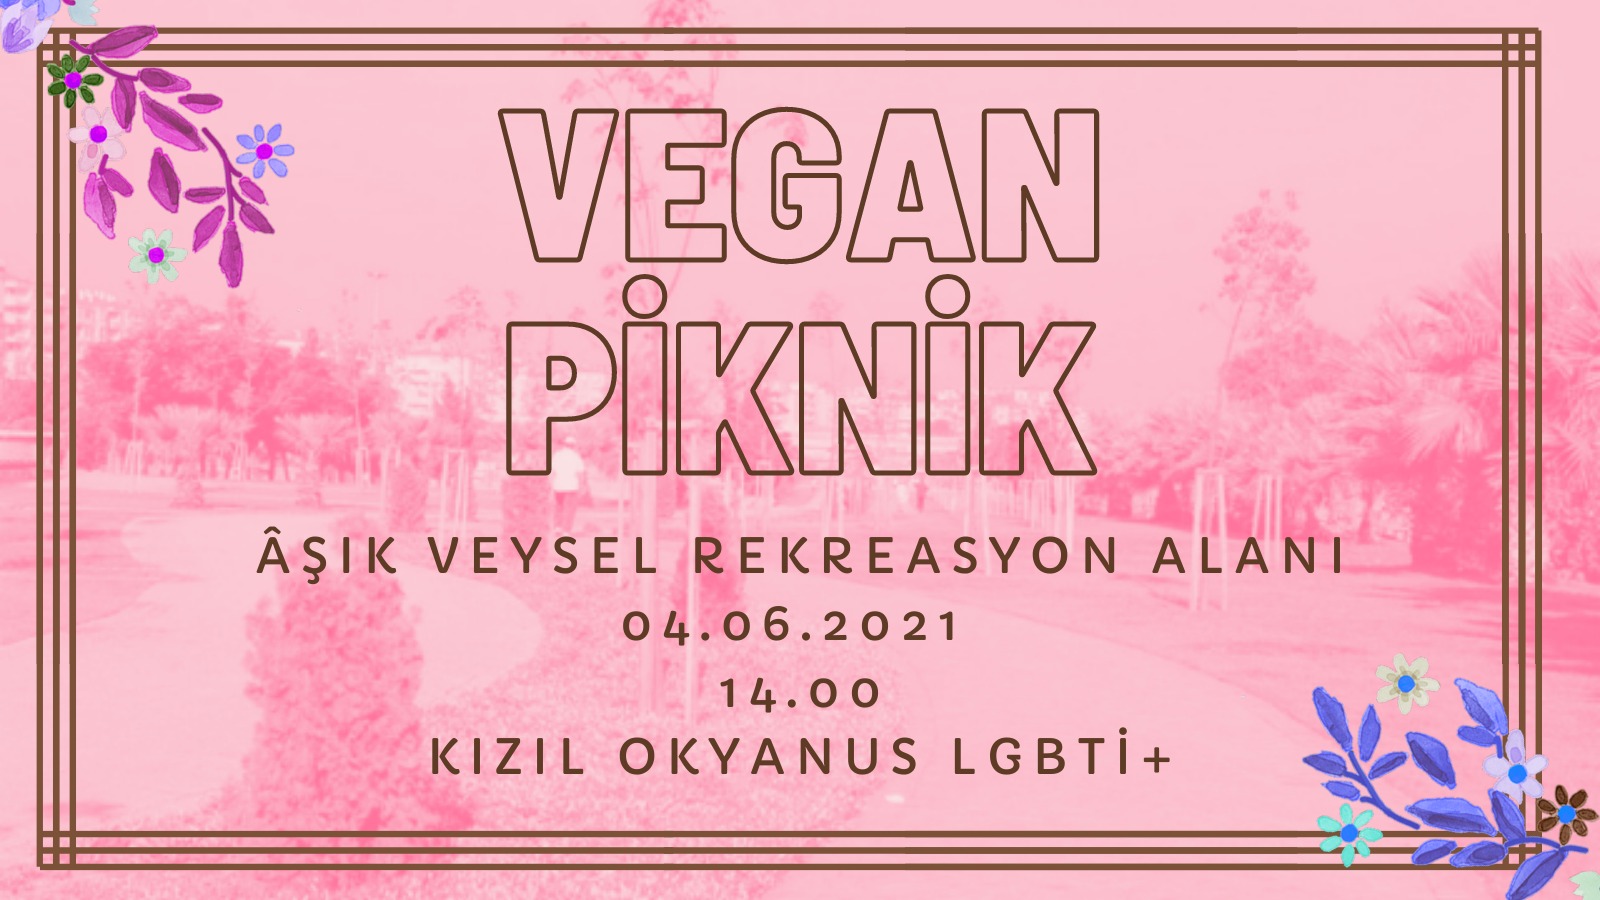 Kızıl Okyanus LGBTİ+ İzmir, Onur Ayı pikniğine çağırıyor Kaos GL - LGBTİ+ Haber Portalı